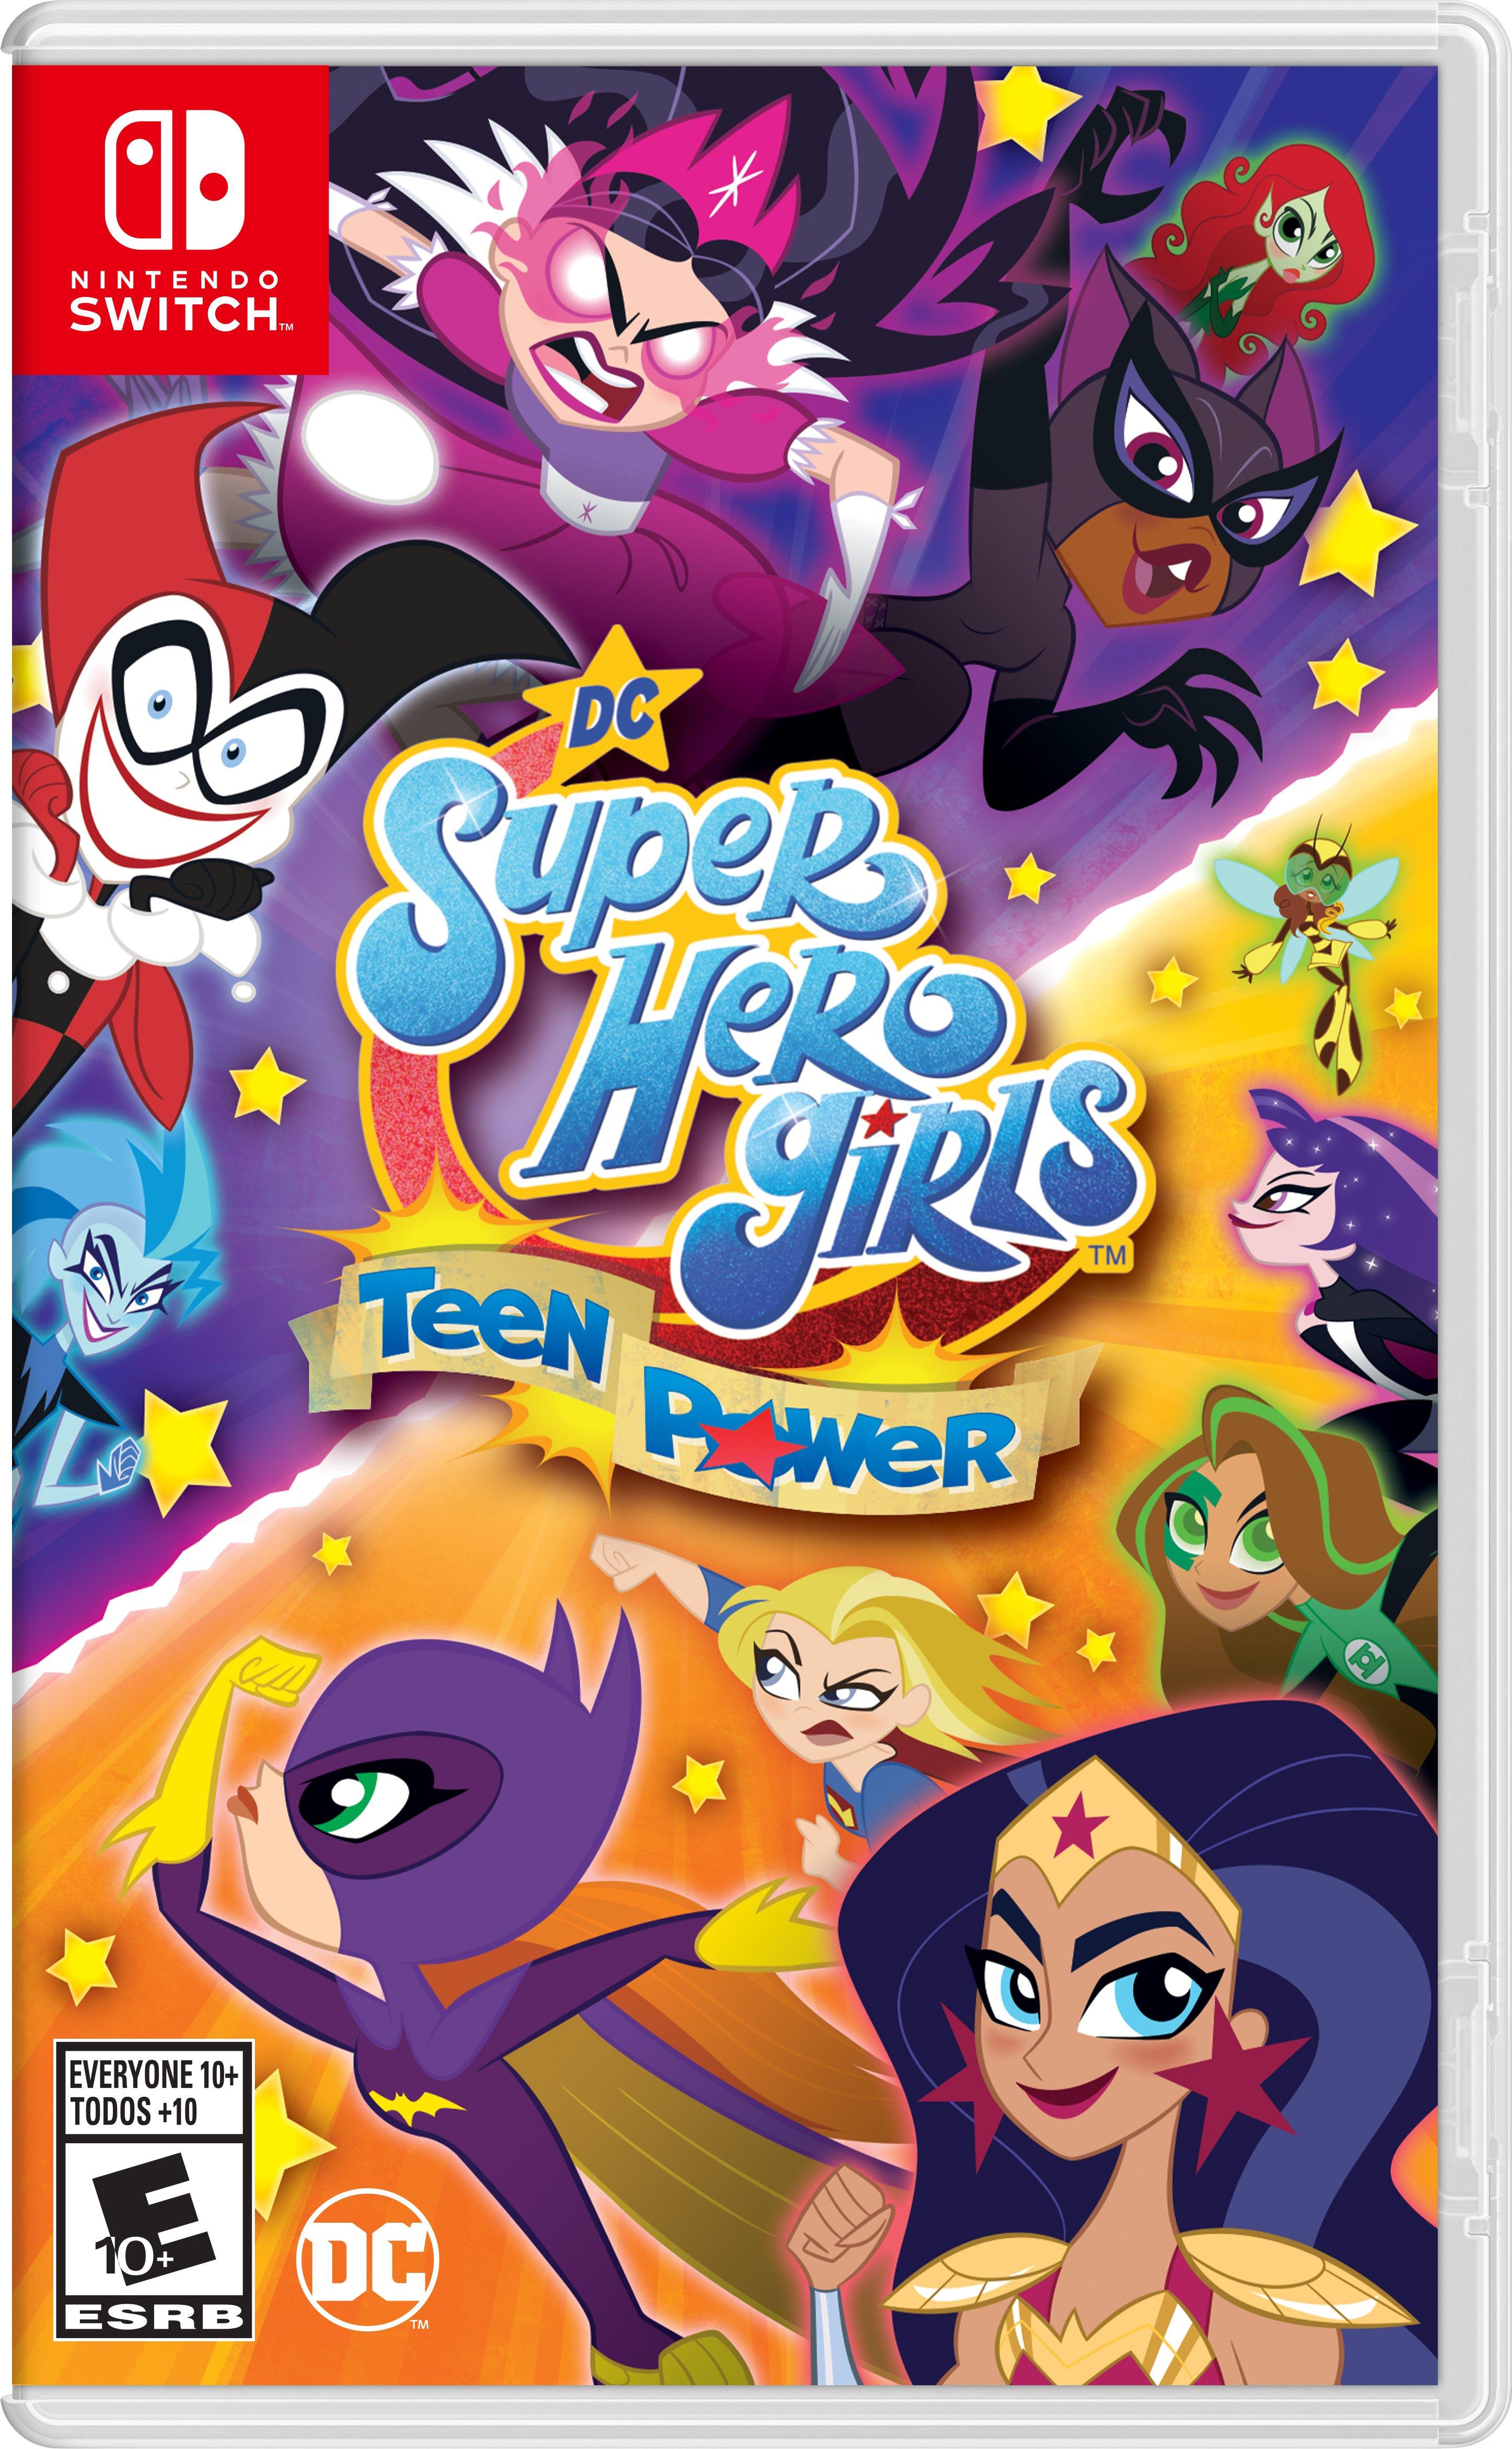 DC Super Hero Girls: Teen Power - Nintendo Switch | Nintendo | GameStop